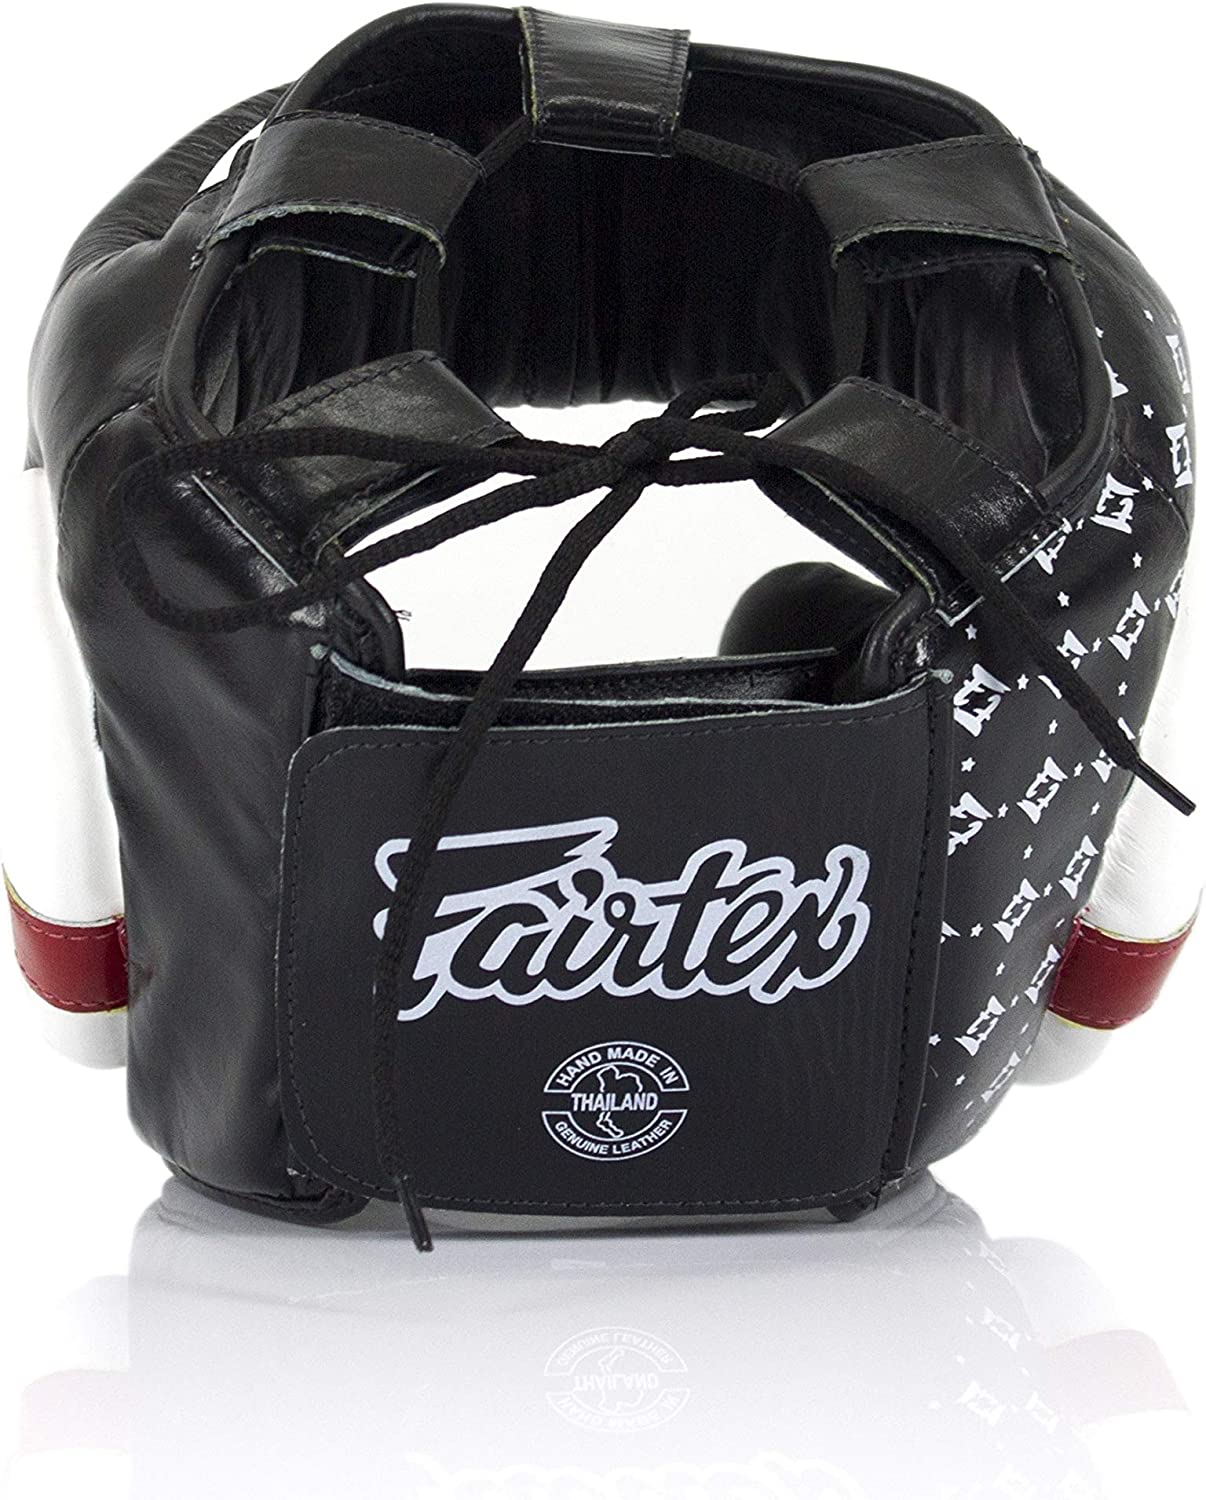 Fairtex - Head Gear - Super Sparring - Black